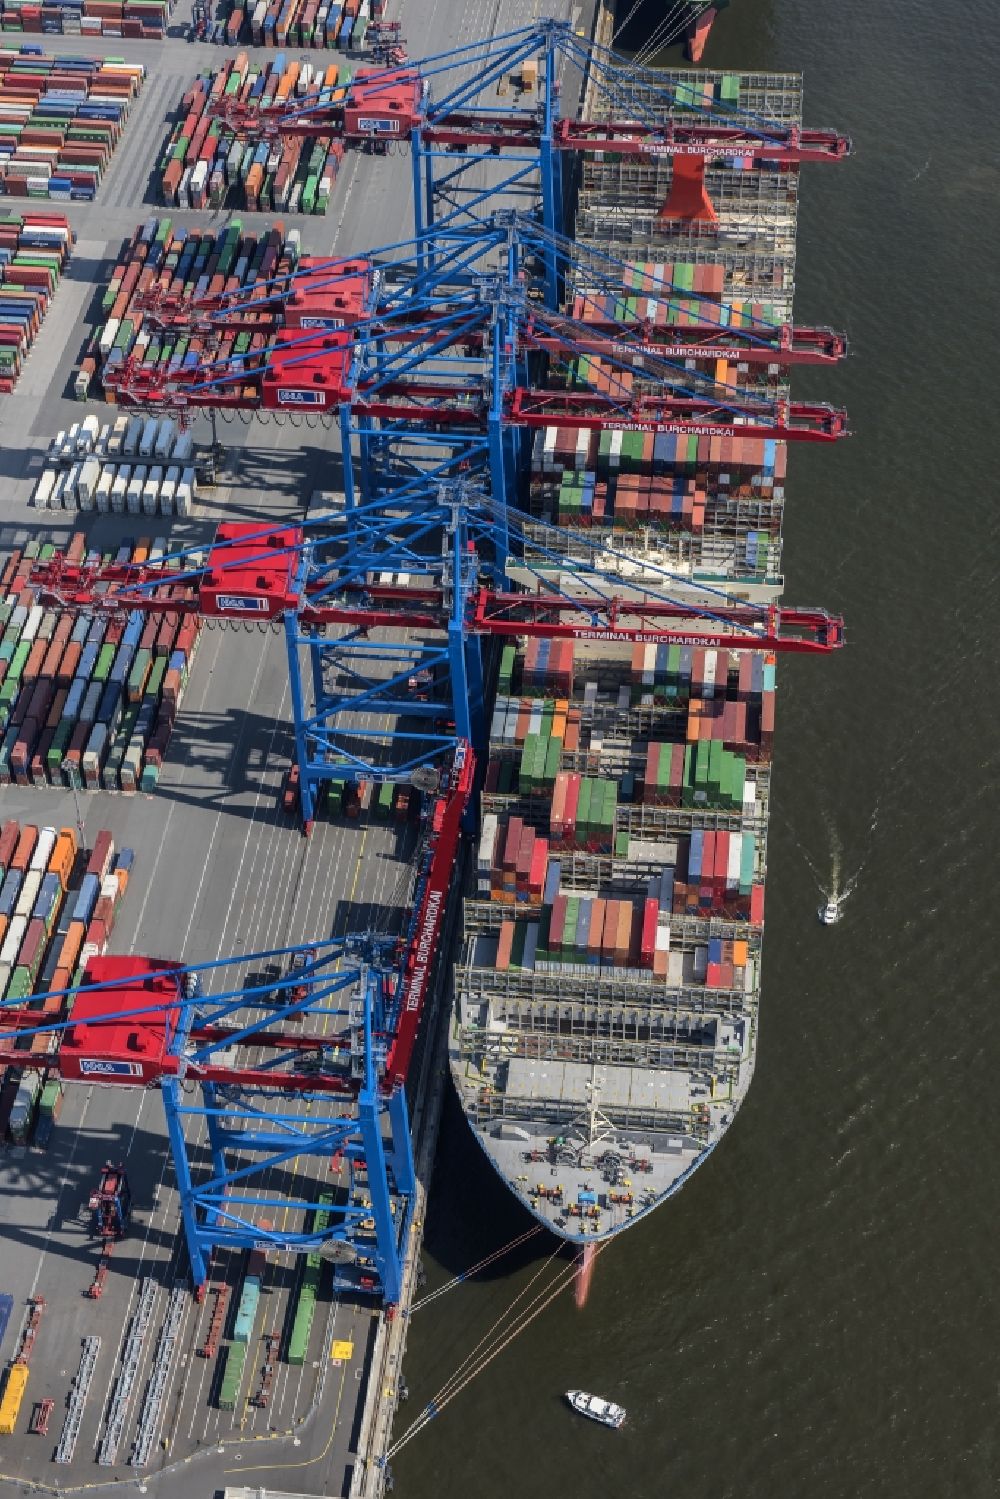 Hamburg von oben - HHLA Logistics Container Terminal Burchhardkai am Hamburger Hafen / Waltershofer Hafen in Hamburg Containerschiff MOL Triumph